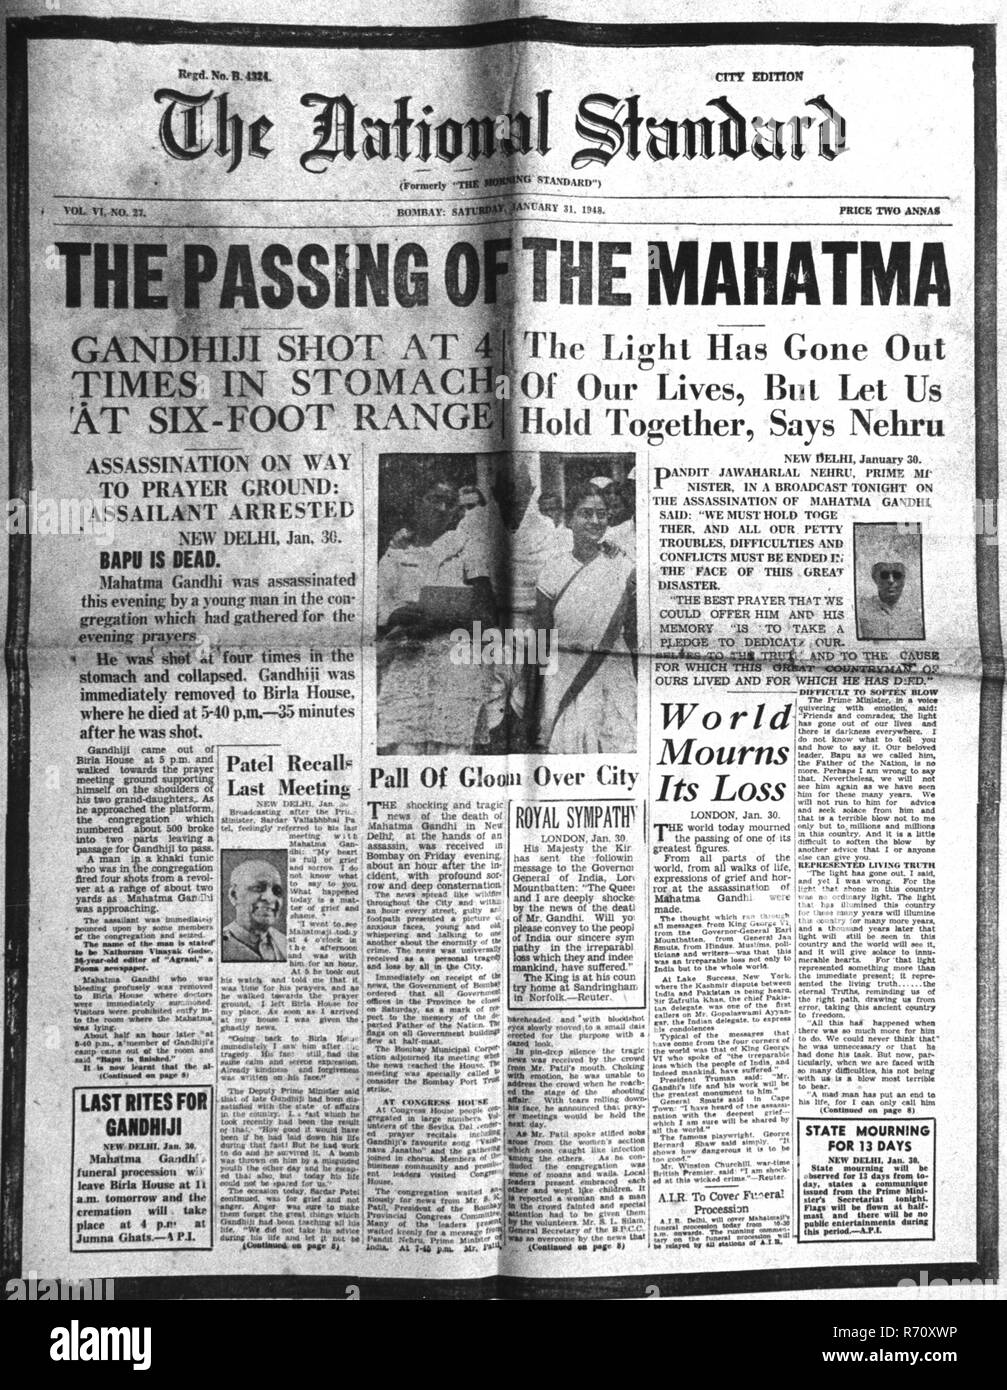 Mahatma Gandhi assassinato, il giornale nazionale standard, prima pagina, 31 gennaio 1948, vecchia immagine del 1900 Foto Stock